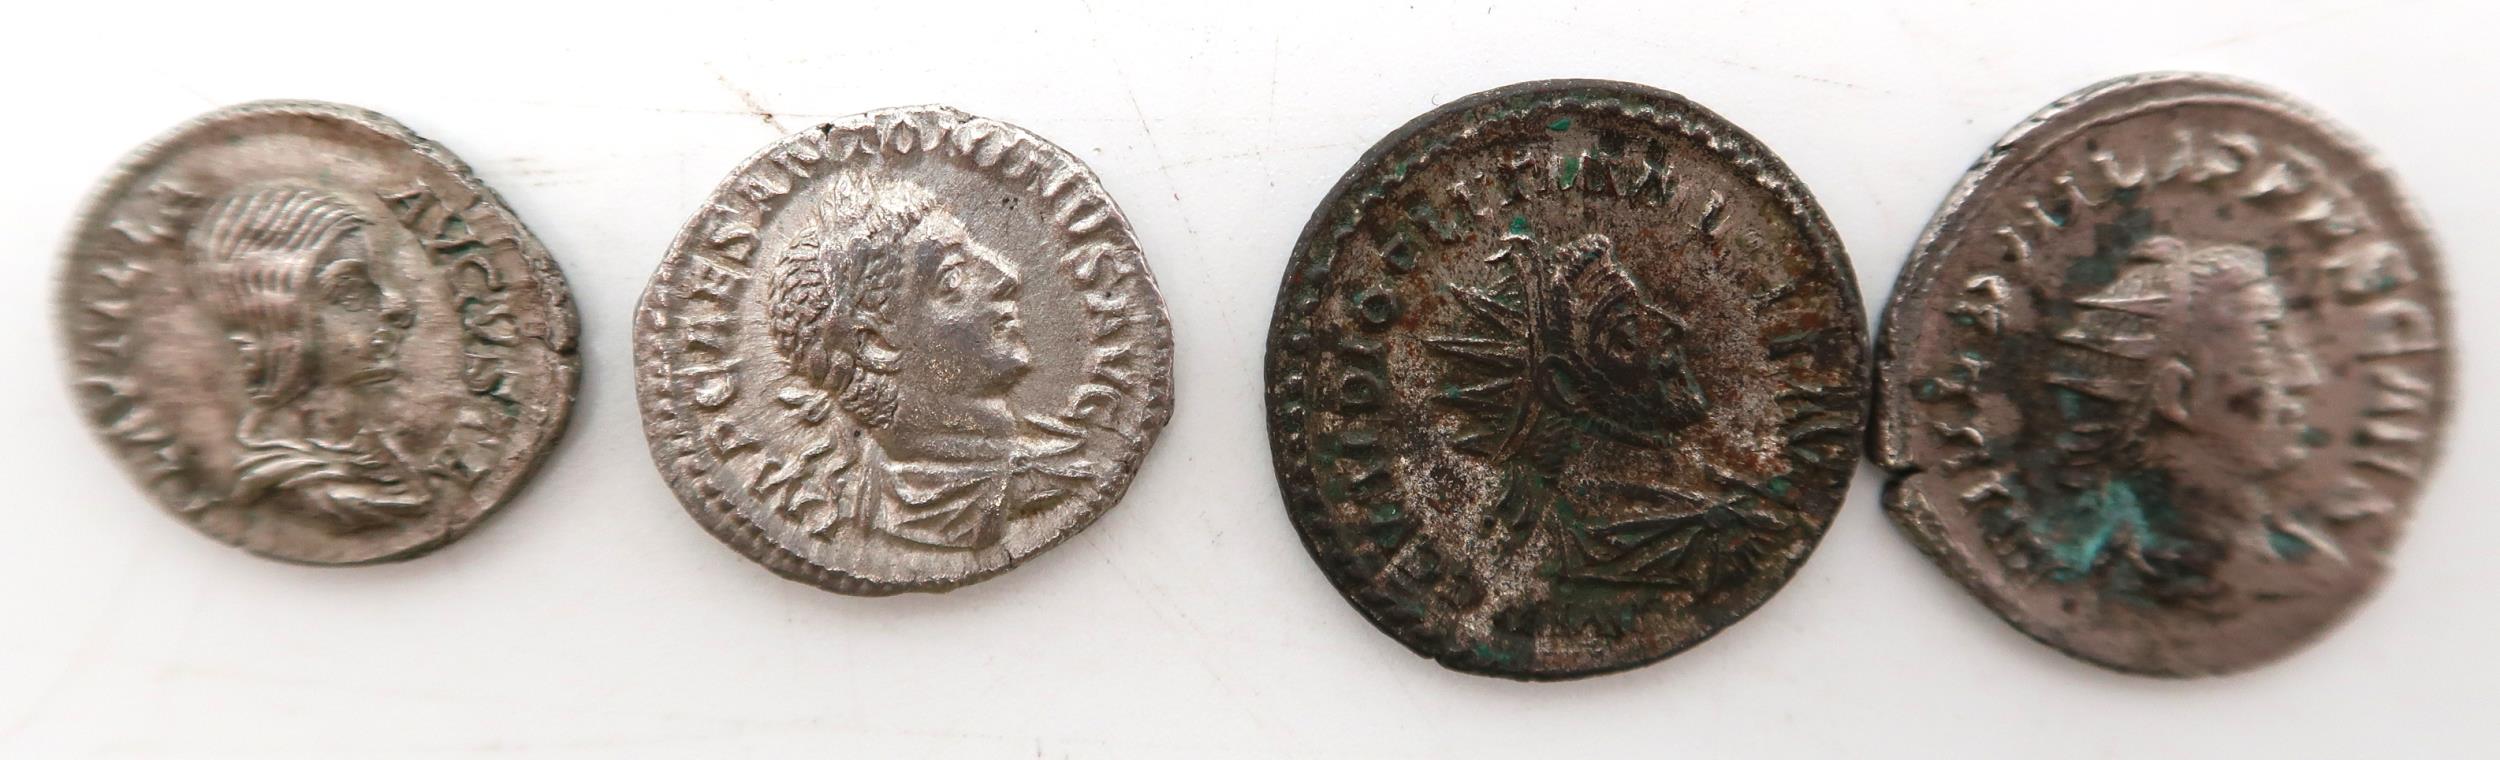 PLAUTILLA ( 202 to 203 ) (Marcus Aurelius Antoninus Caracalla) (198-217) SEAR 1901 RIC 367 Obverse